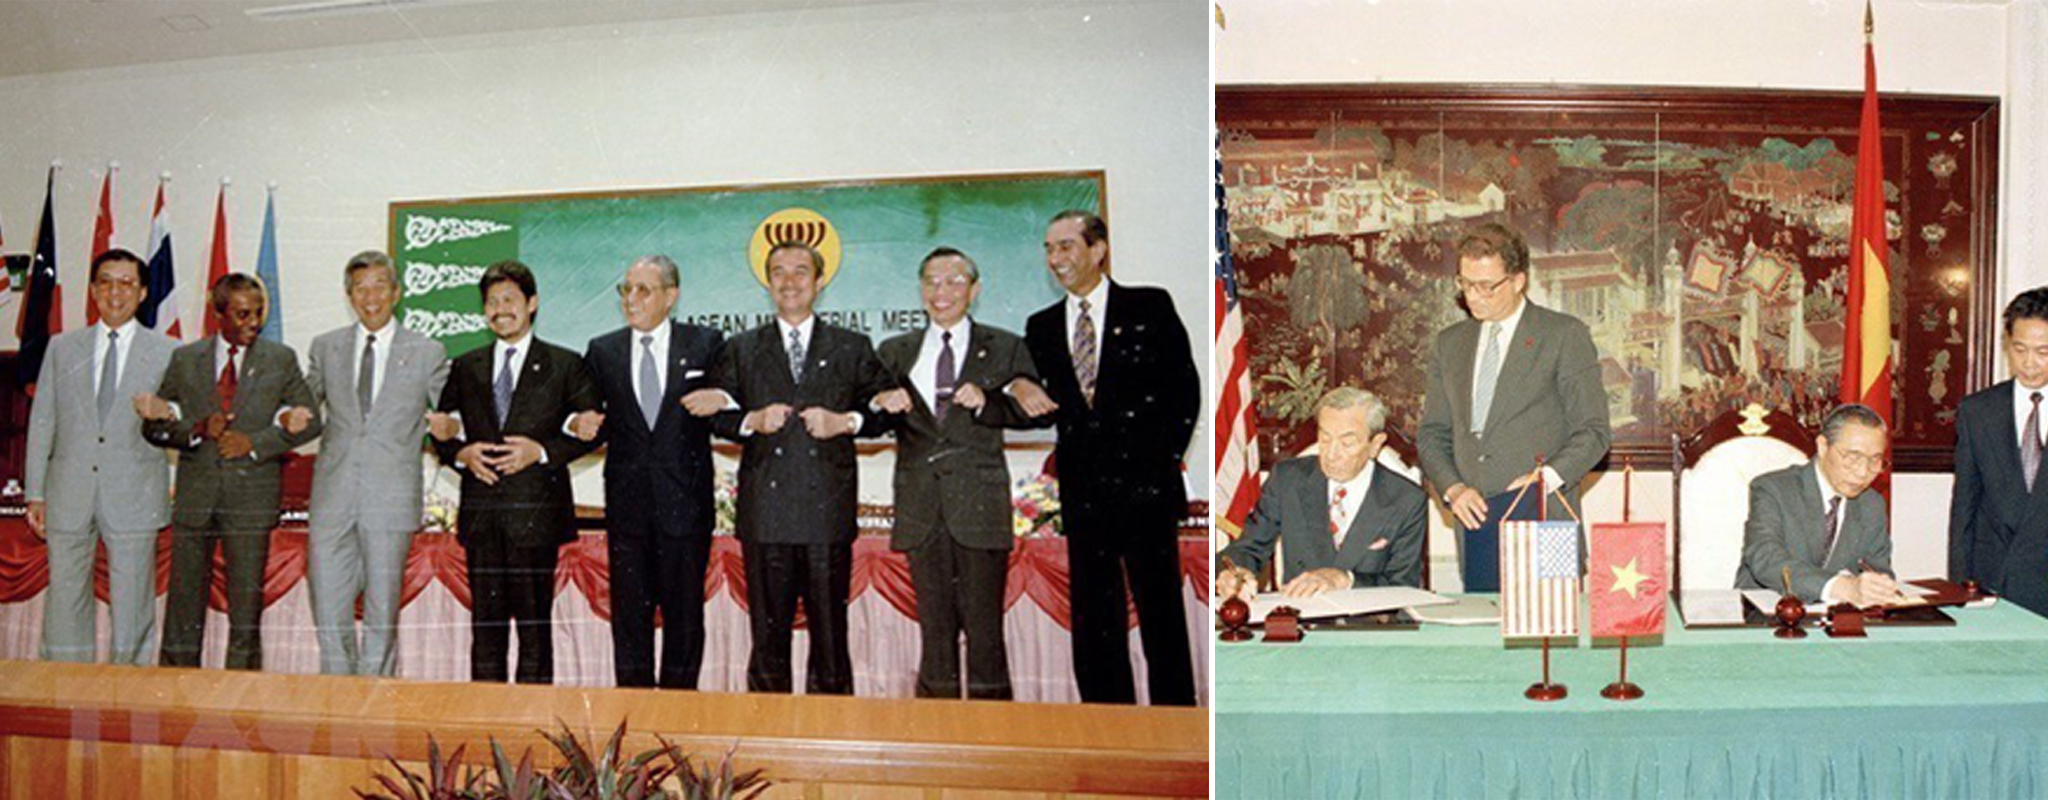 Bộ trưởng Ngoại giao Nguyễn Mạnh Cầm (thứ hai, từ phải sang), Tổng Thư ký ASEAN và các Bộ trưởng Ngoại giao ASEAN tại cuộc họp kết nạp Việt Nam trở thành thành viên chính thức thứ bảy của ASEAN, ngày 28/7/1995, tại Thủ đô Bandar Seri Begawan (Brunei). (Ảnh: Trần Sơn/TTXVN) 